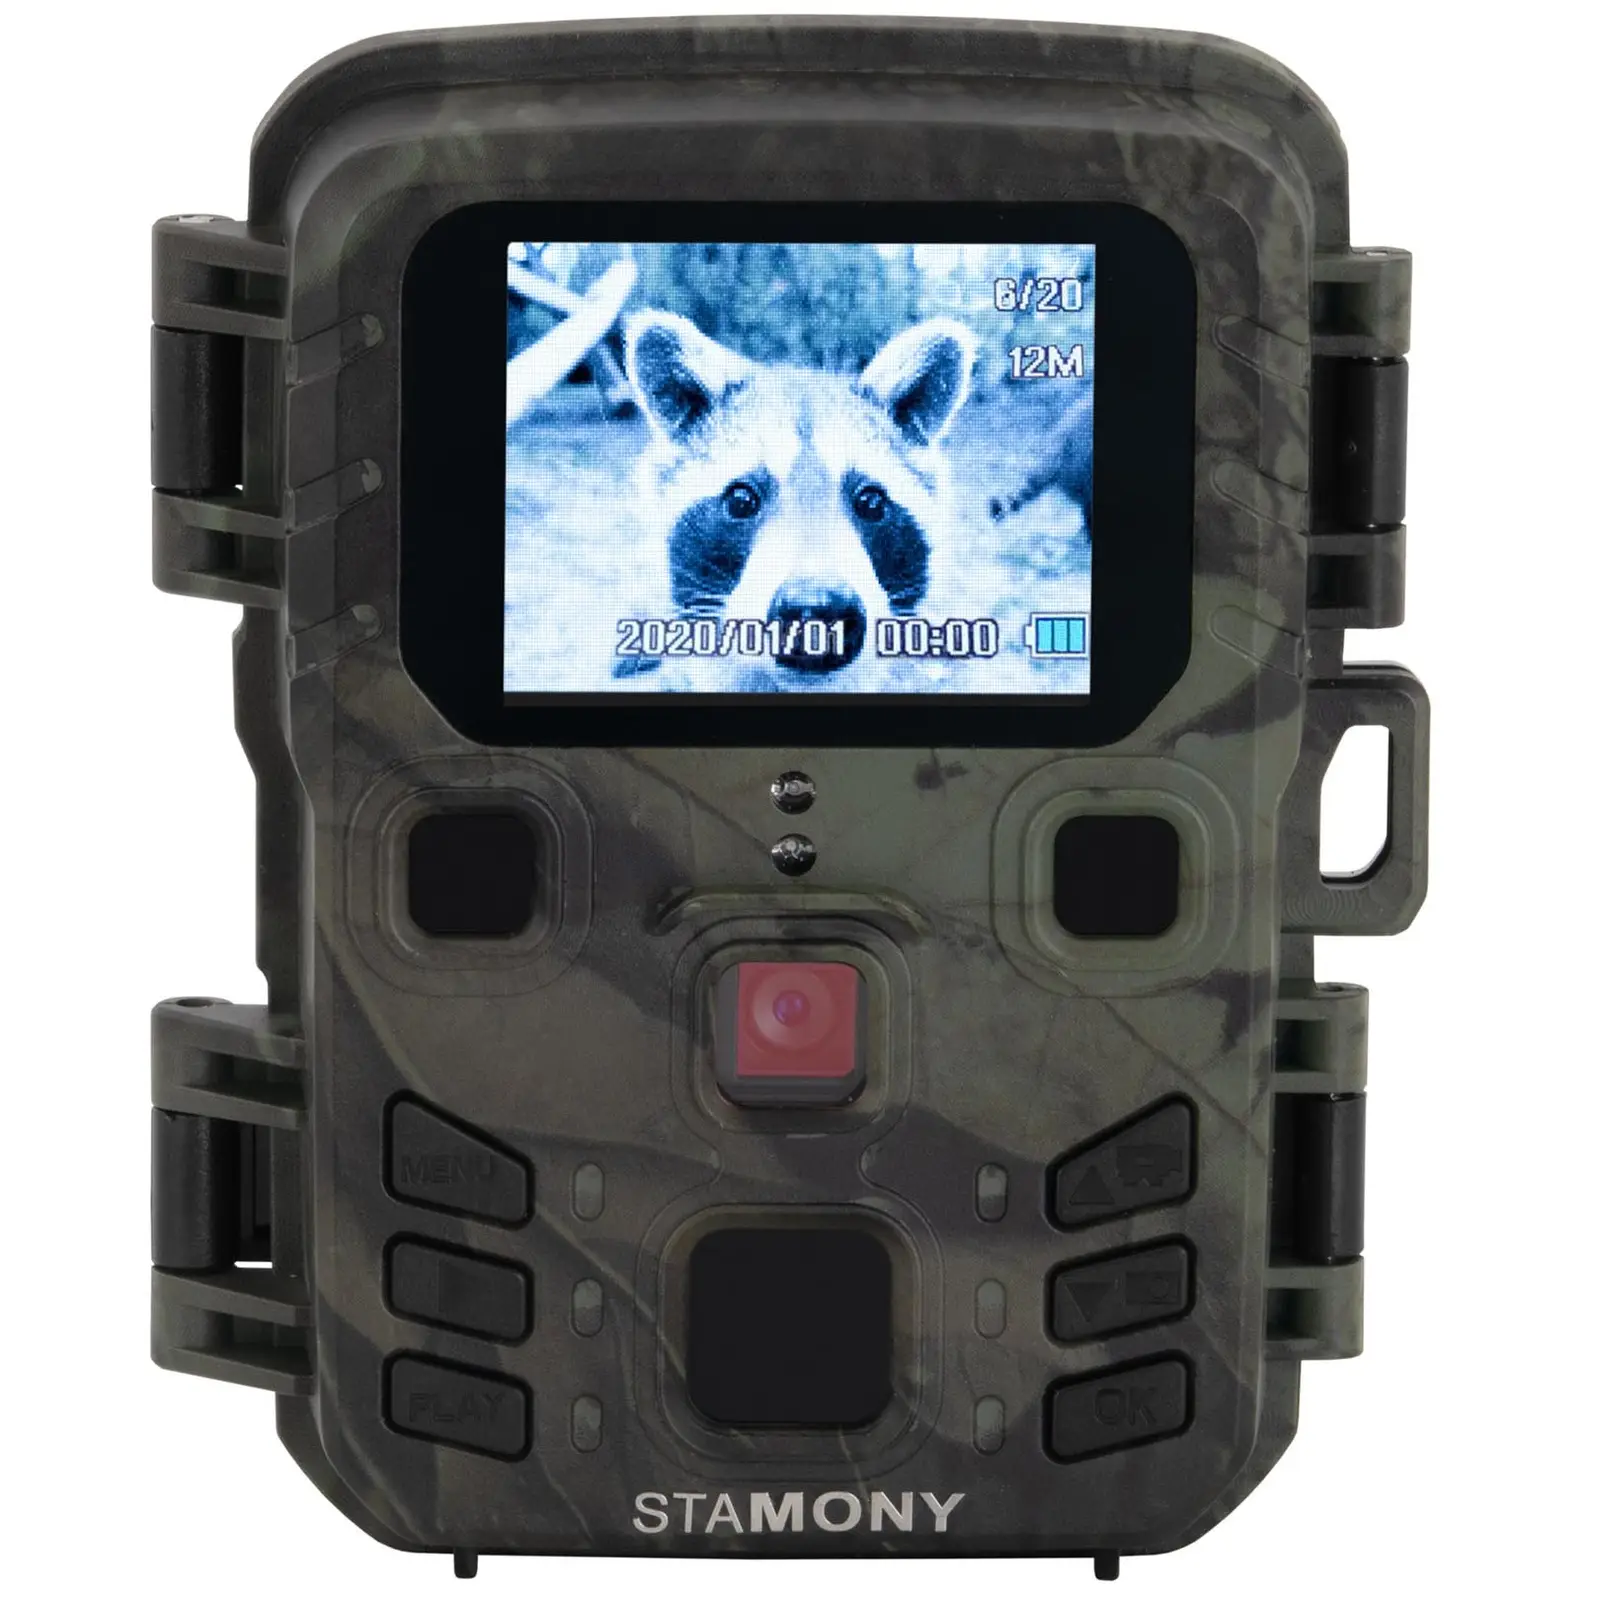 Mini vadkamera - 5 MP - Full HD - 20 m - 1.1 s